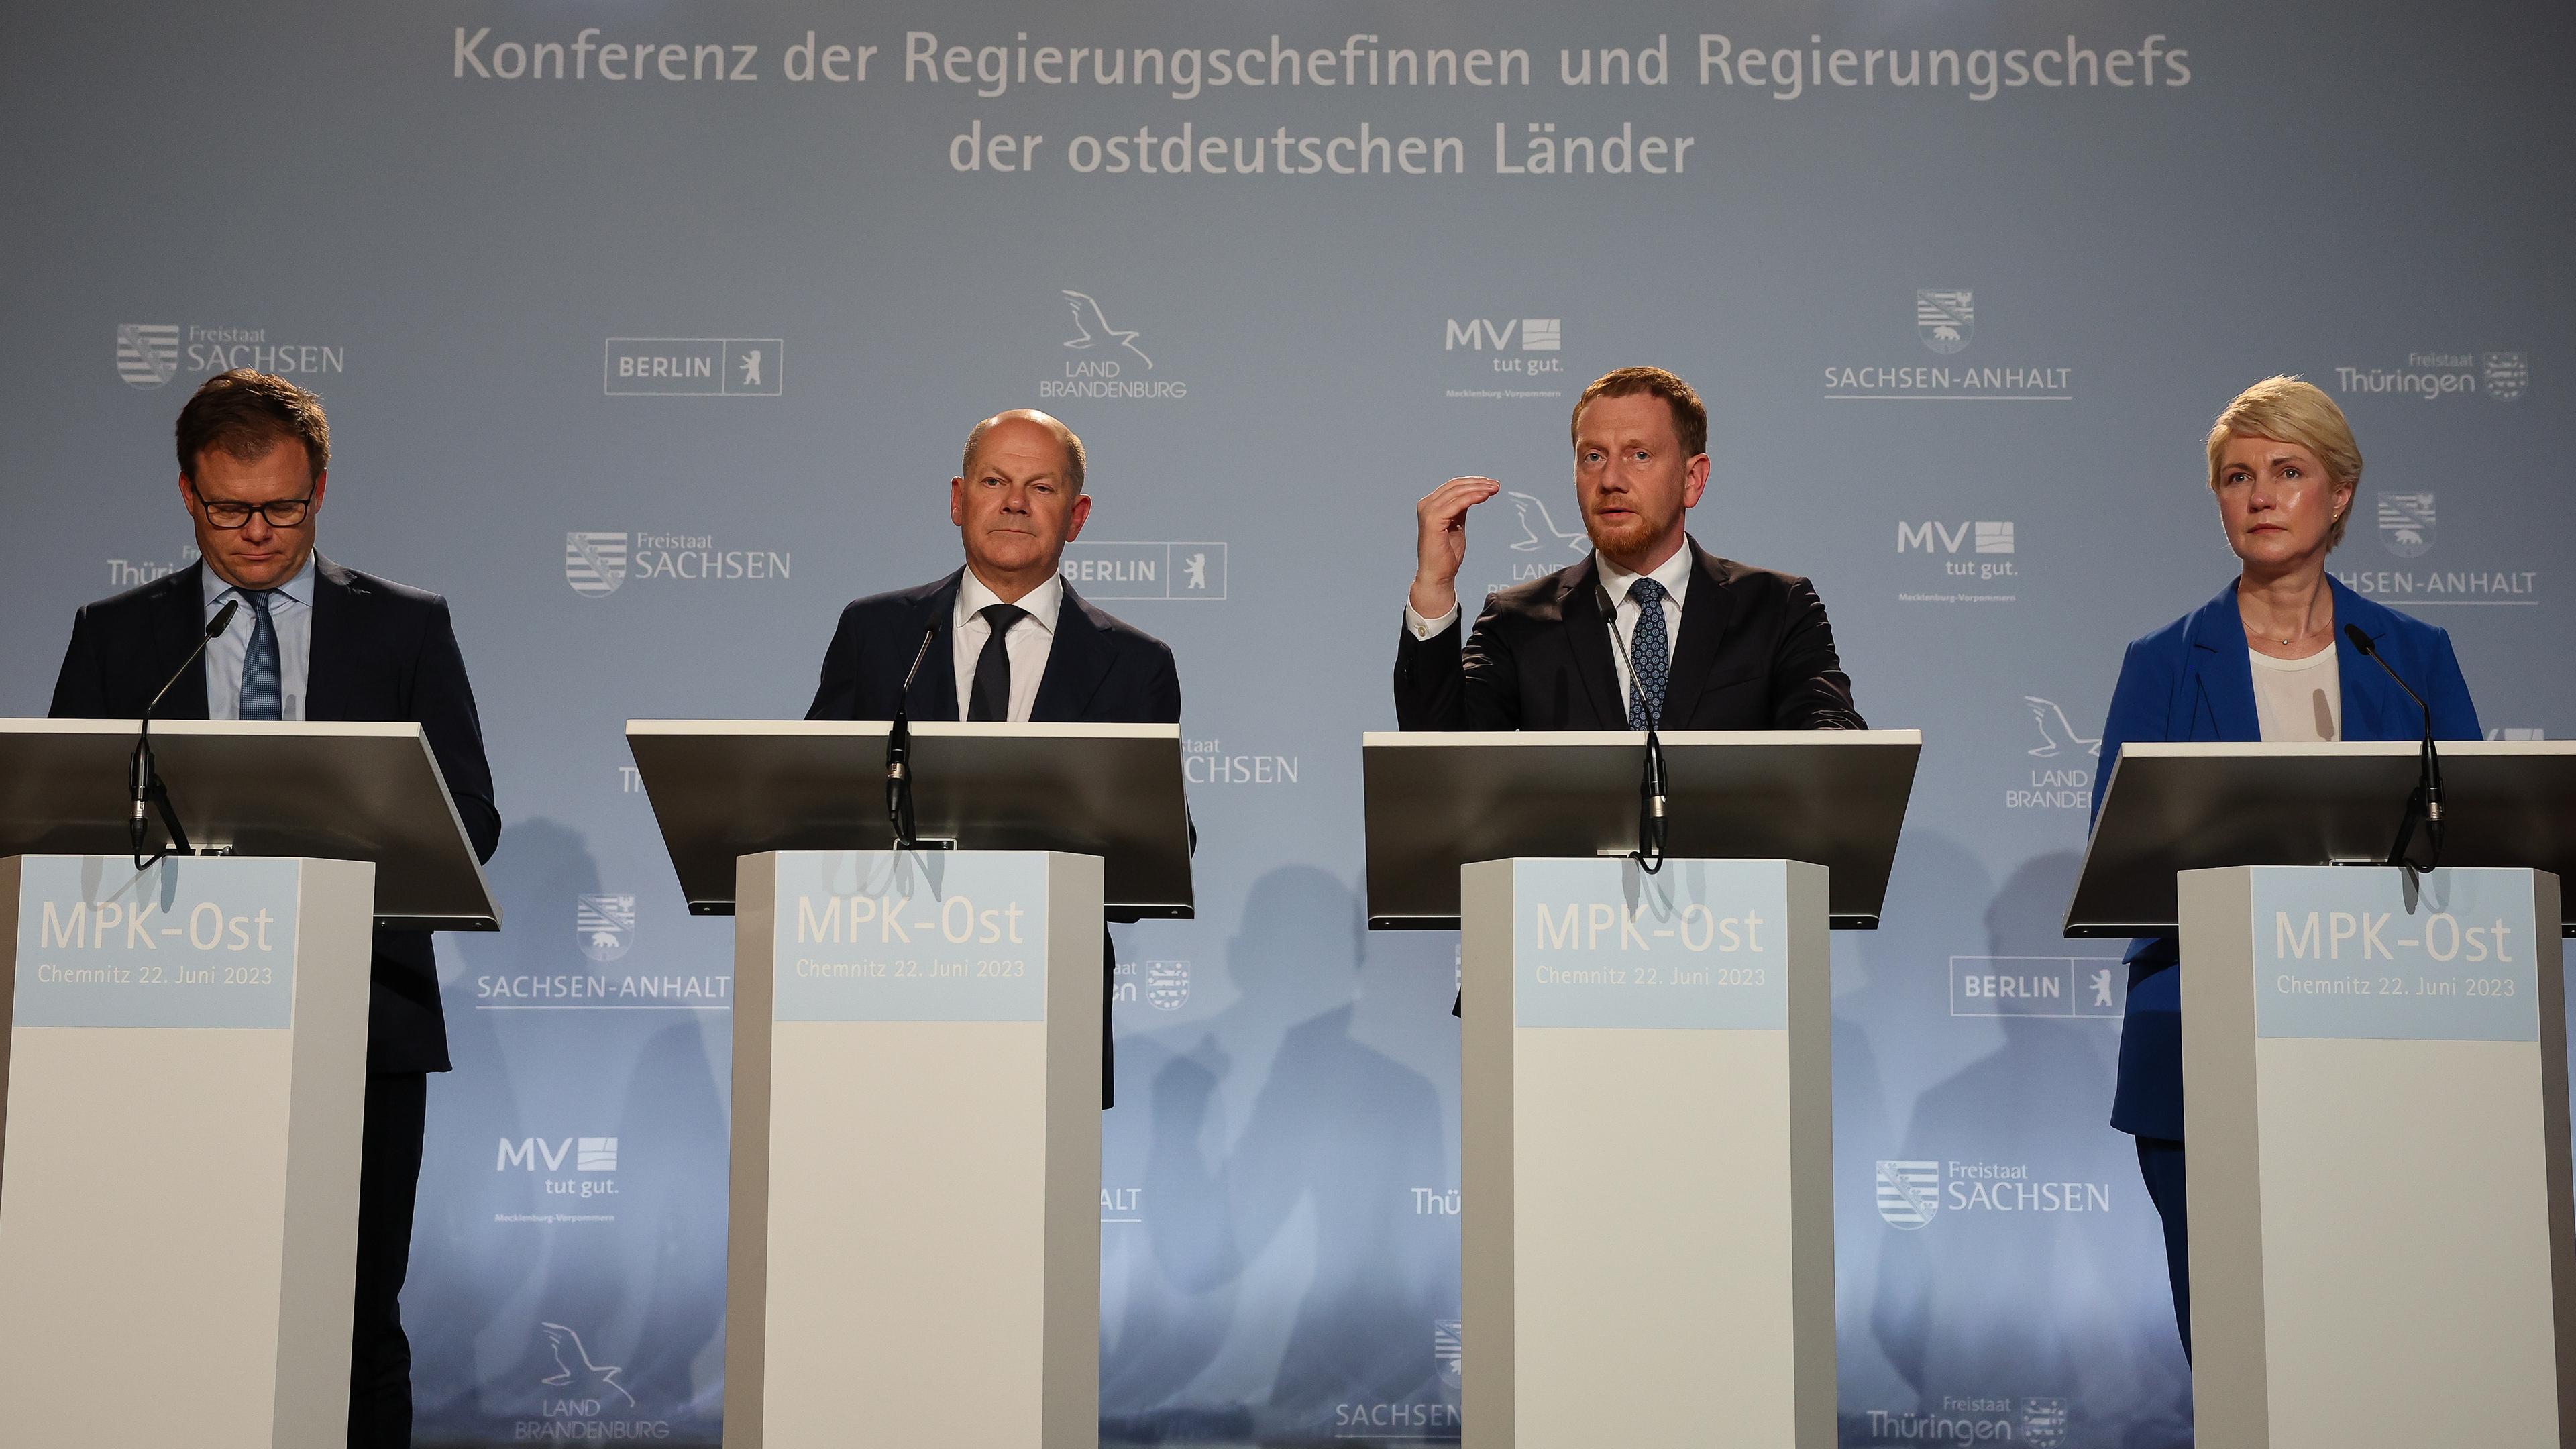 22.06.23, Chemnitz: Bundeskanzler Olaf Scholz, Michael Kretschmer und Manuela Schwesig stehen vor Rednerpulten auf einer Pressenkonferenz.